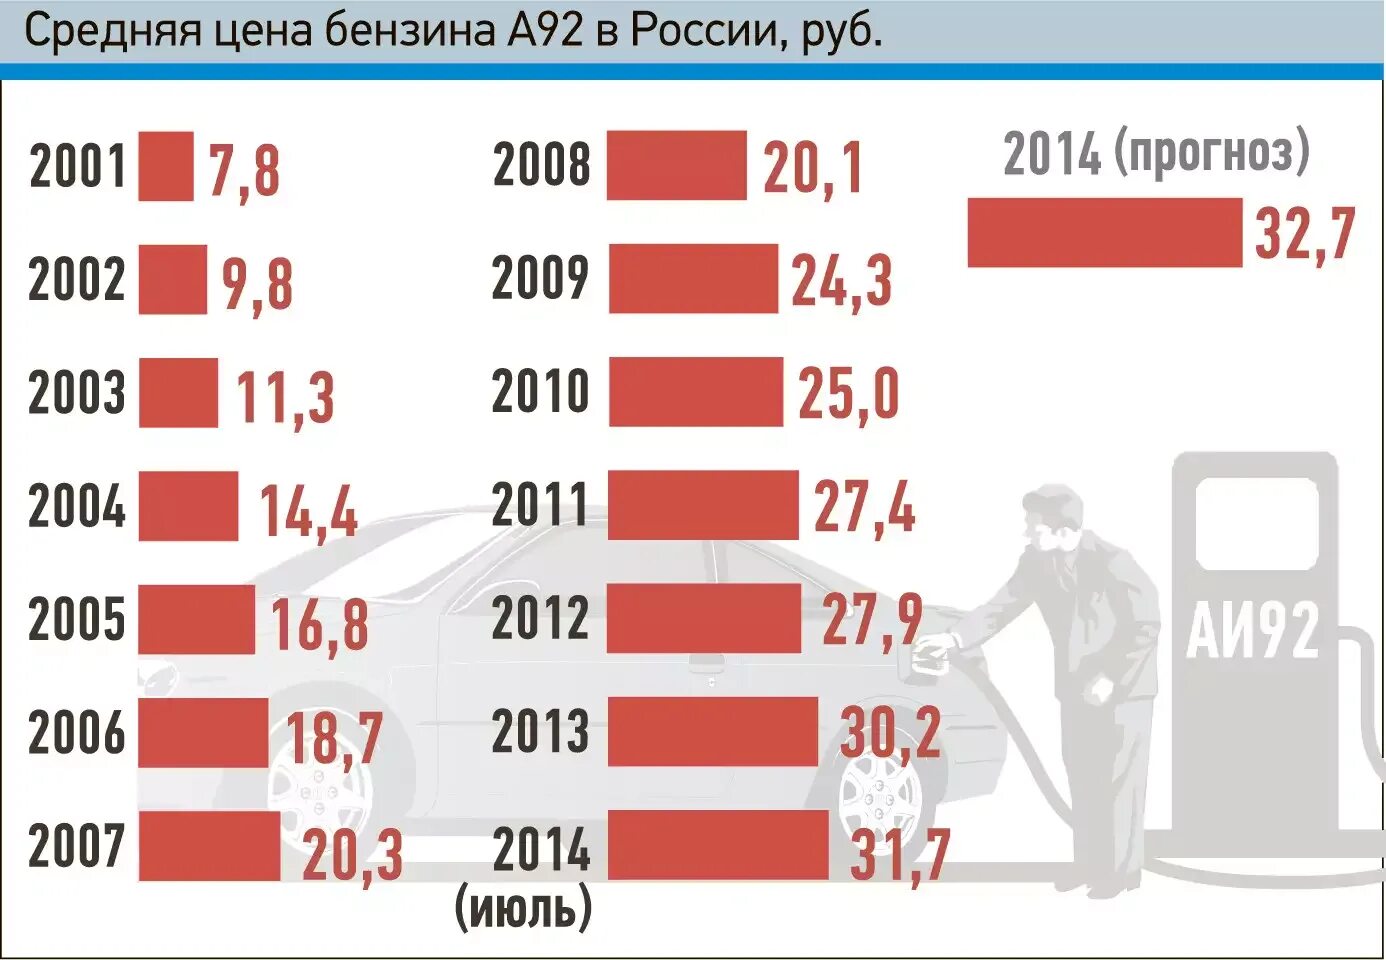 Сколько будет лет в 2003. Сколько стоил бензин в 2003 году. Сколько стоил бензин в 2001 году в России. Сколько стоил бензин в России. Стоимость бензина в 2003 году.